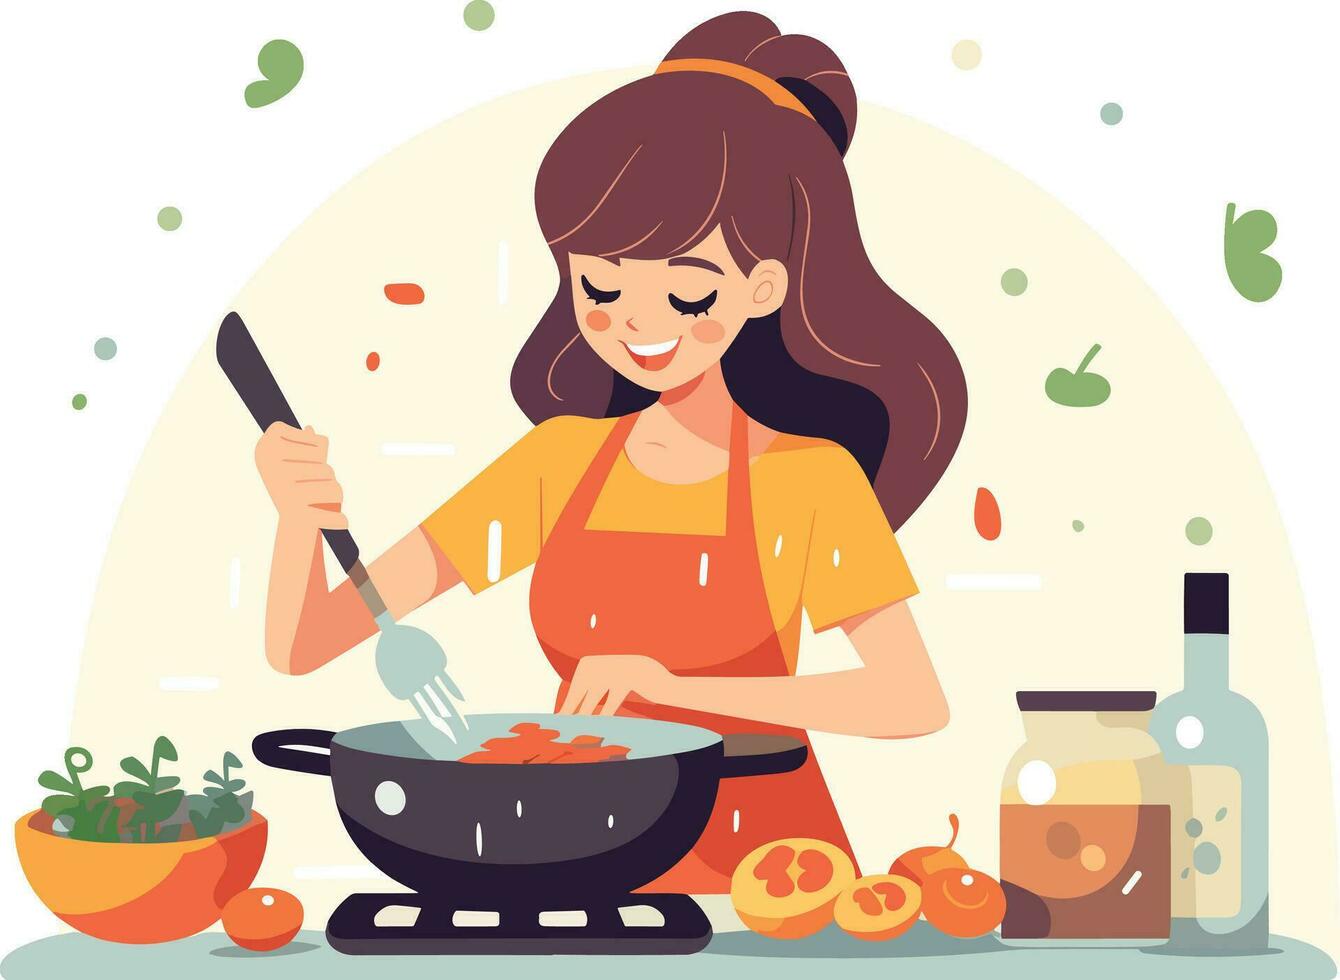 saudável comendo mulher cozinhando uma nutritivo refeição com fresco legumes dentro uma bem equipado cozinha vetor